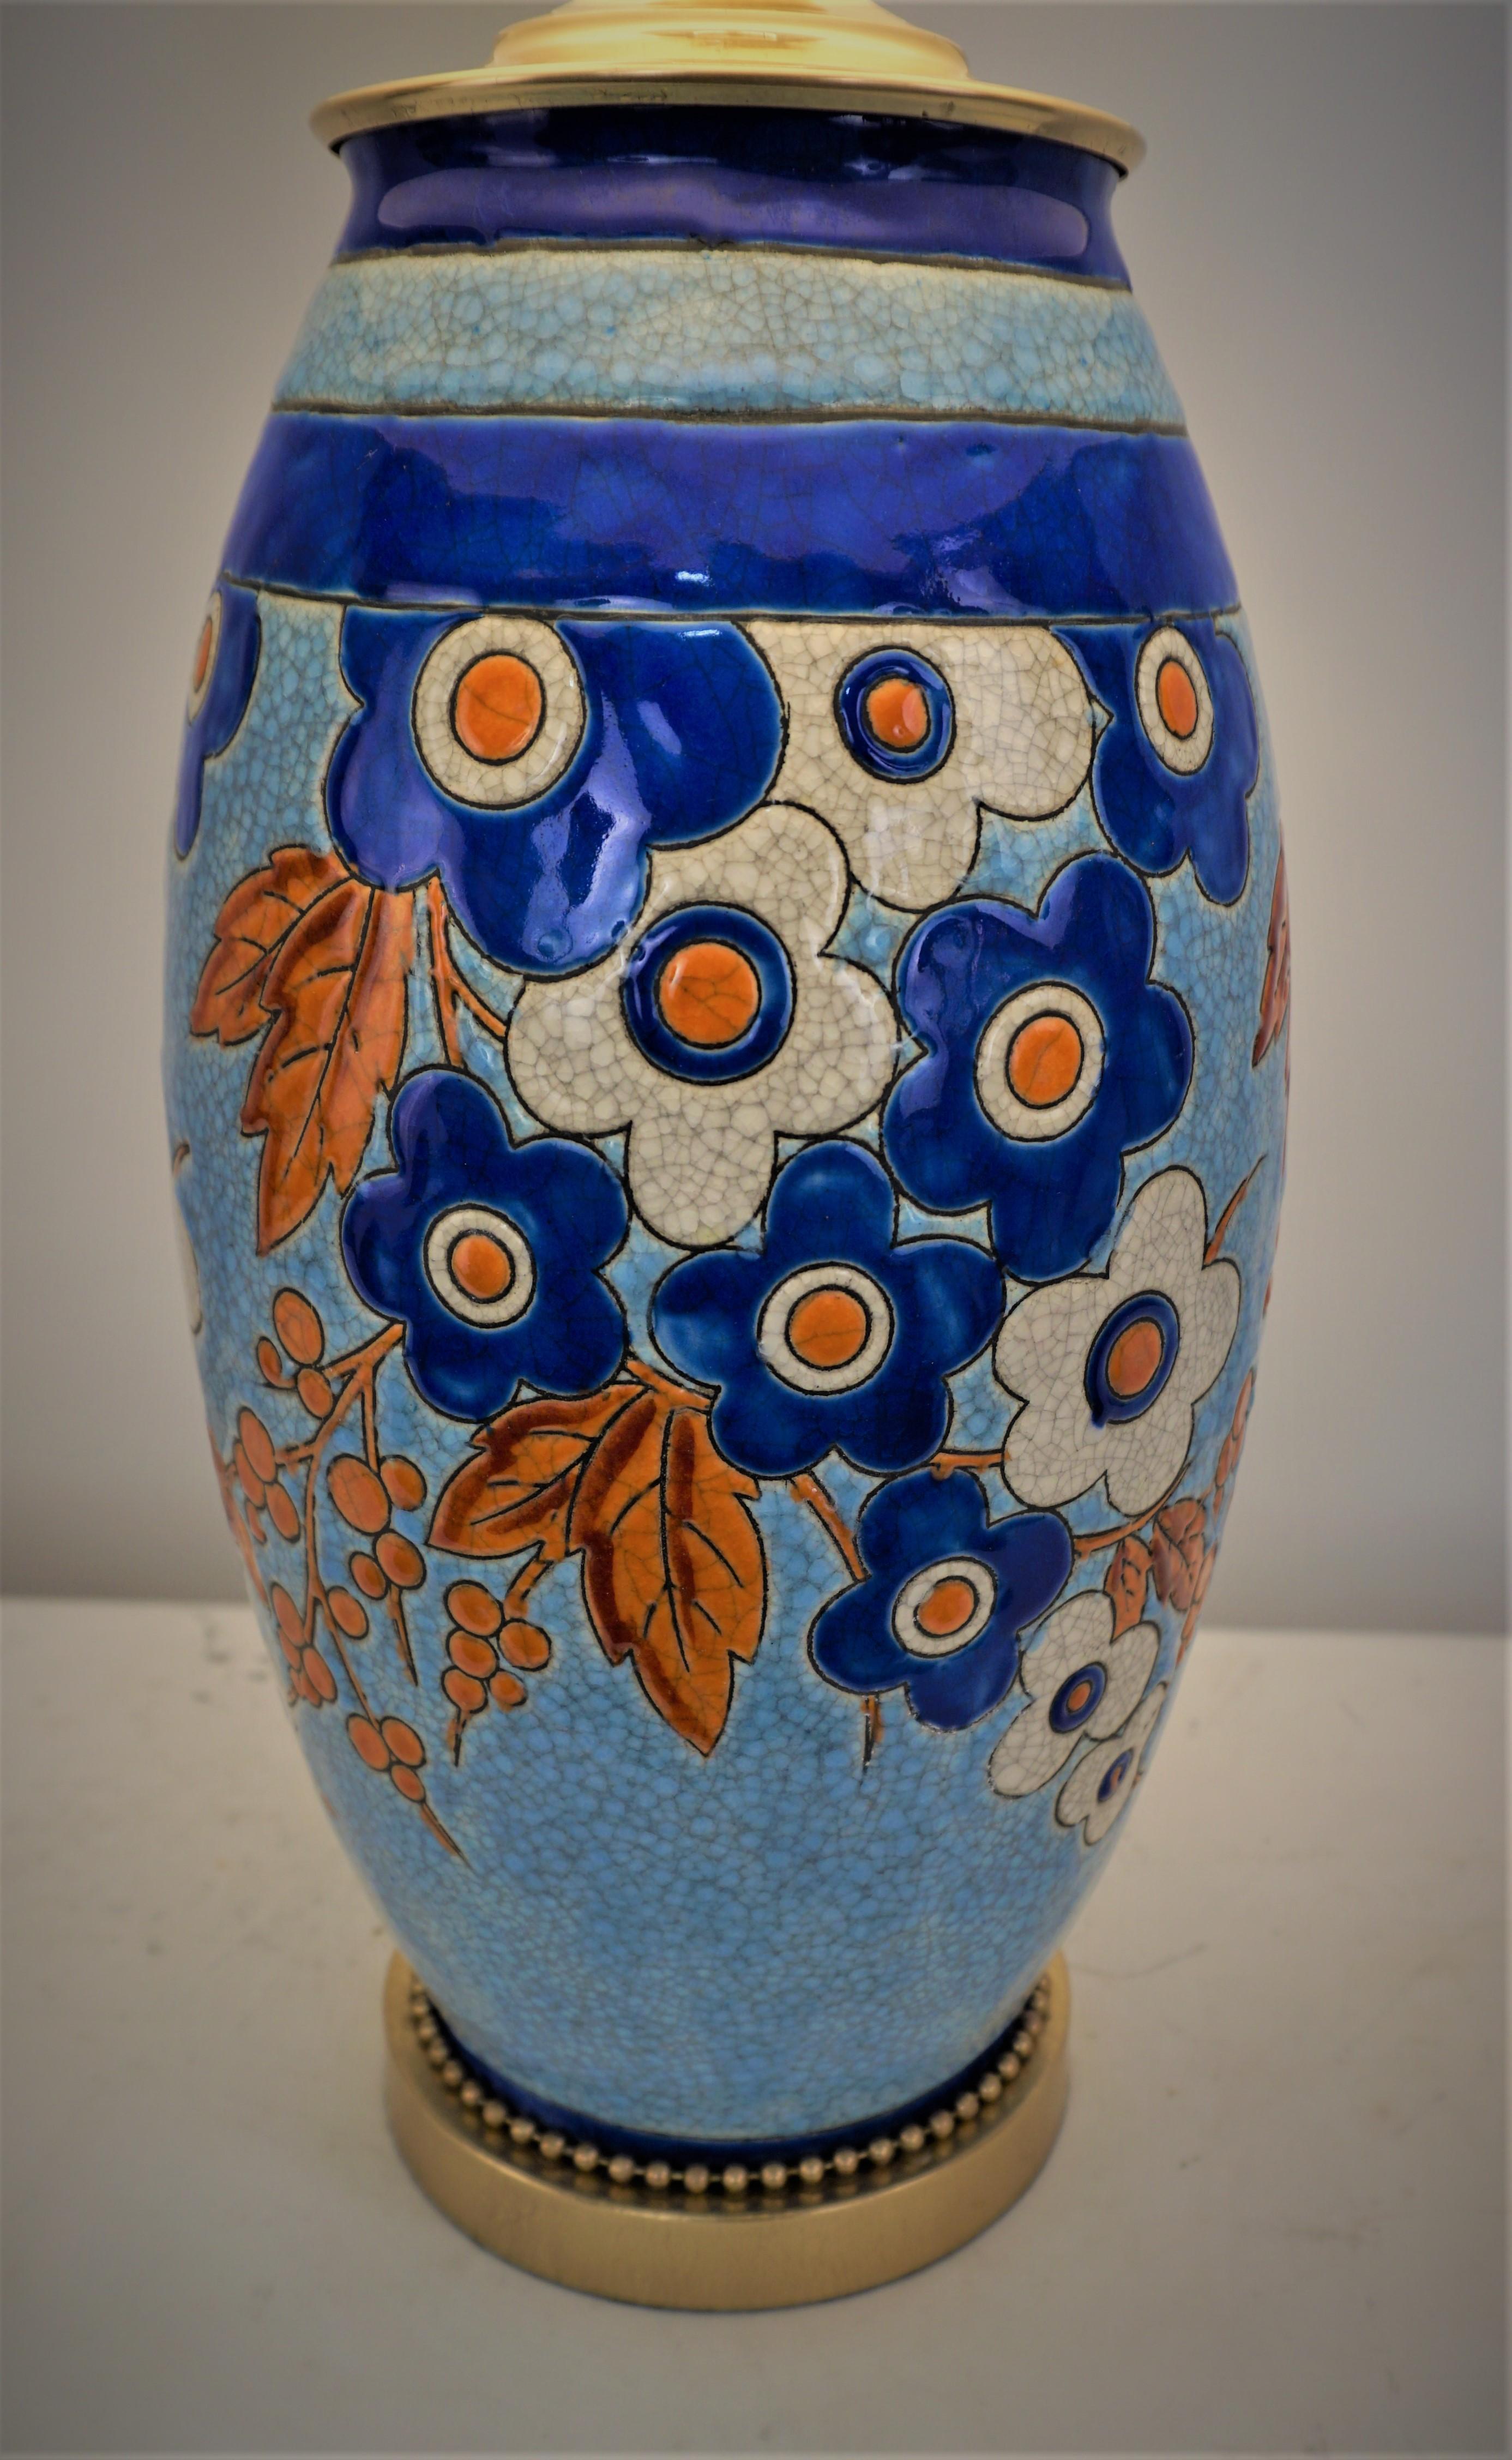 Un magnifique vase coloré en céramique de Boch, conçu par Charles Catteau, a été transformé en une élégante lampe de table avec une base et des ferrures en bronze et un abat-jour en soie rigide. 